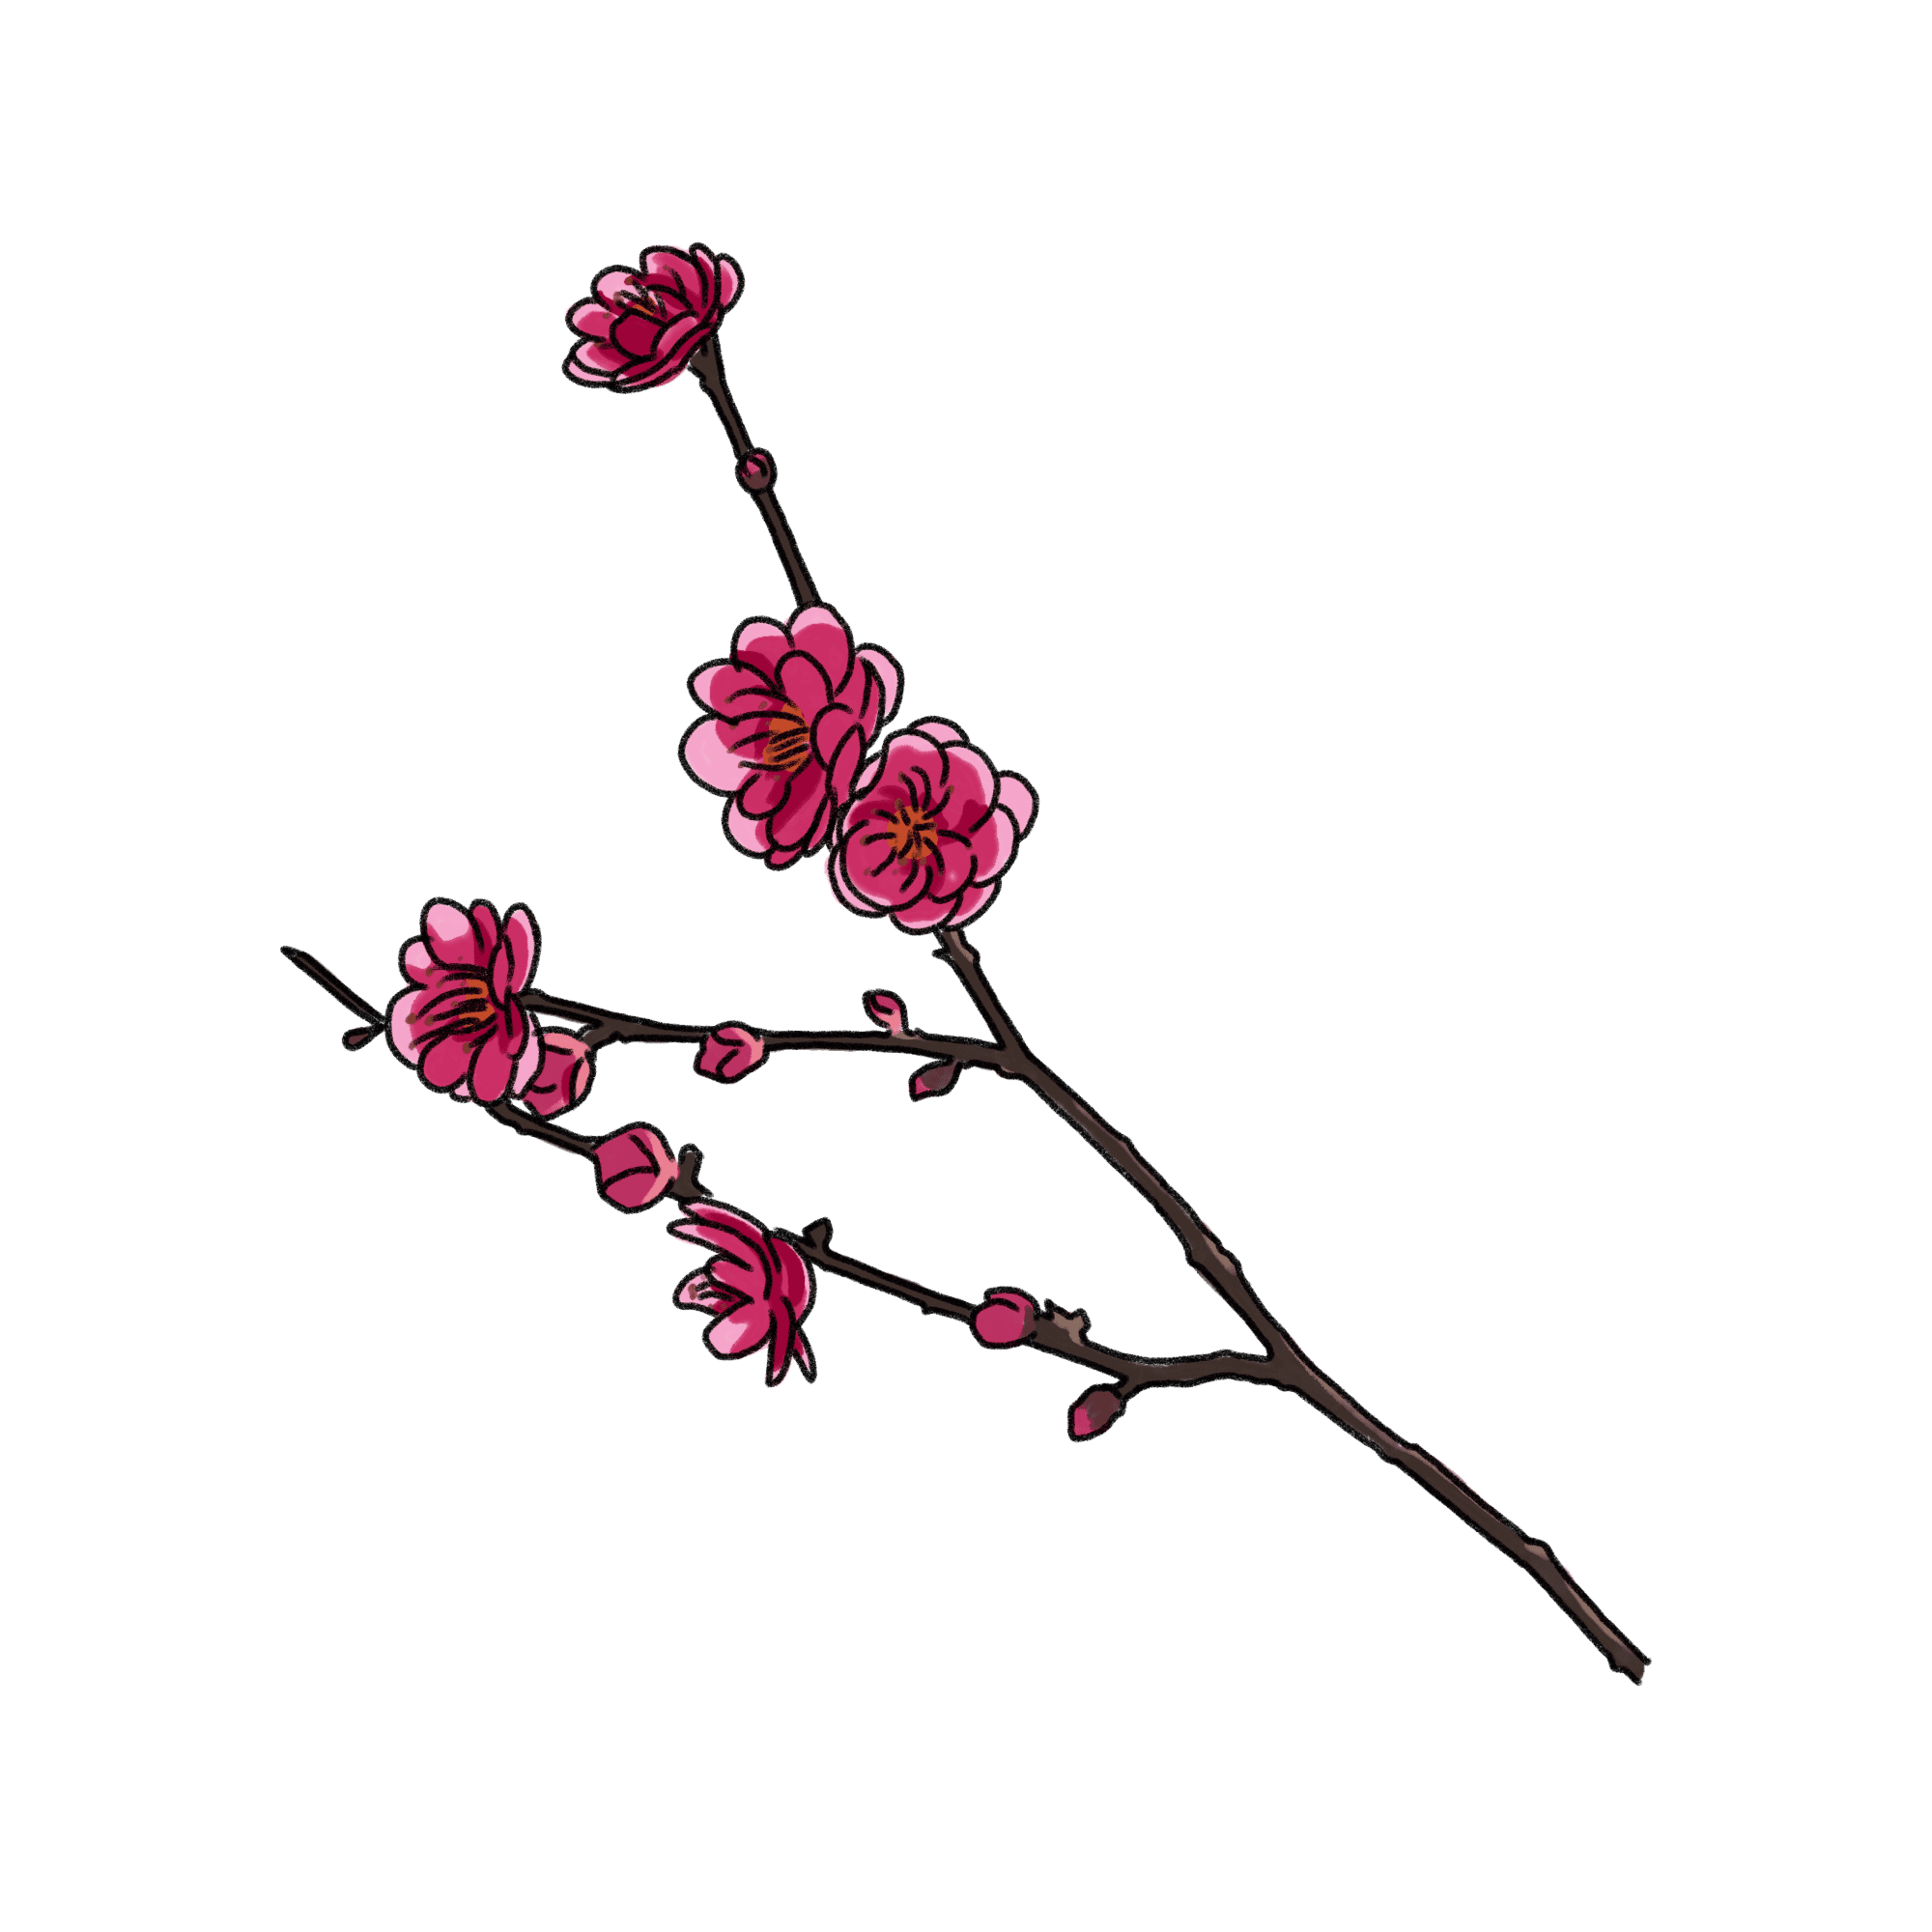 梅の花のイラスト 02 フリー素材 Greenstock40